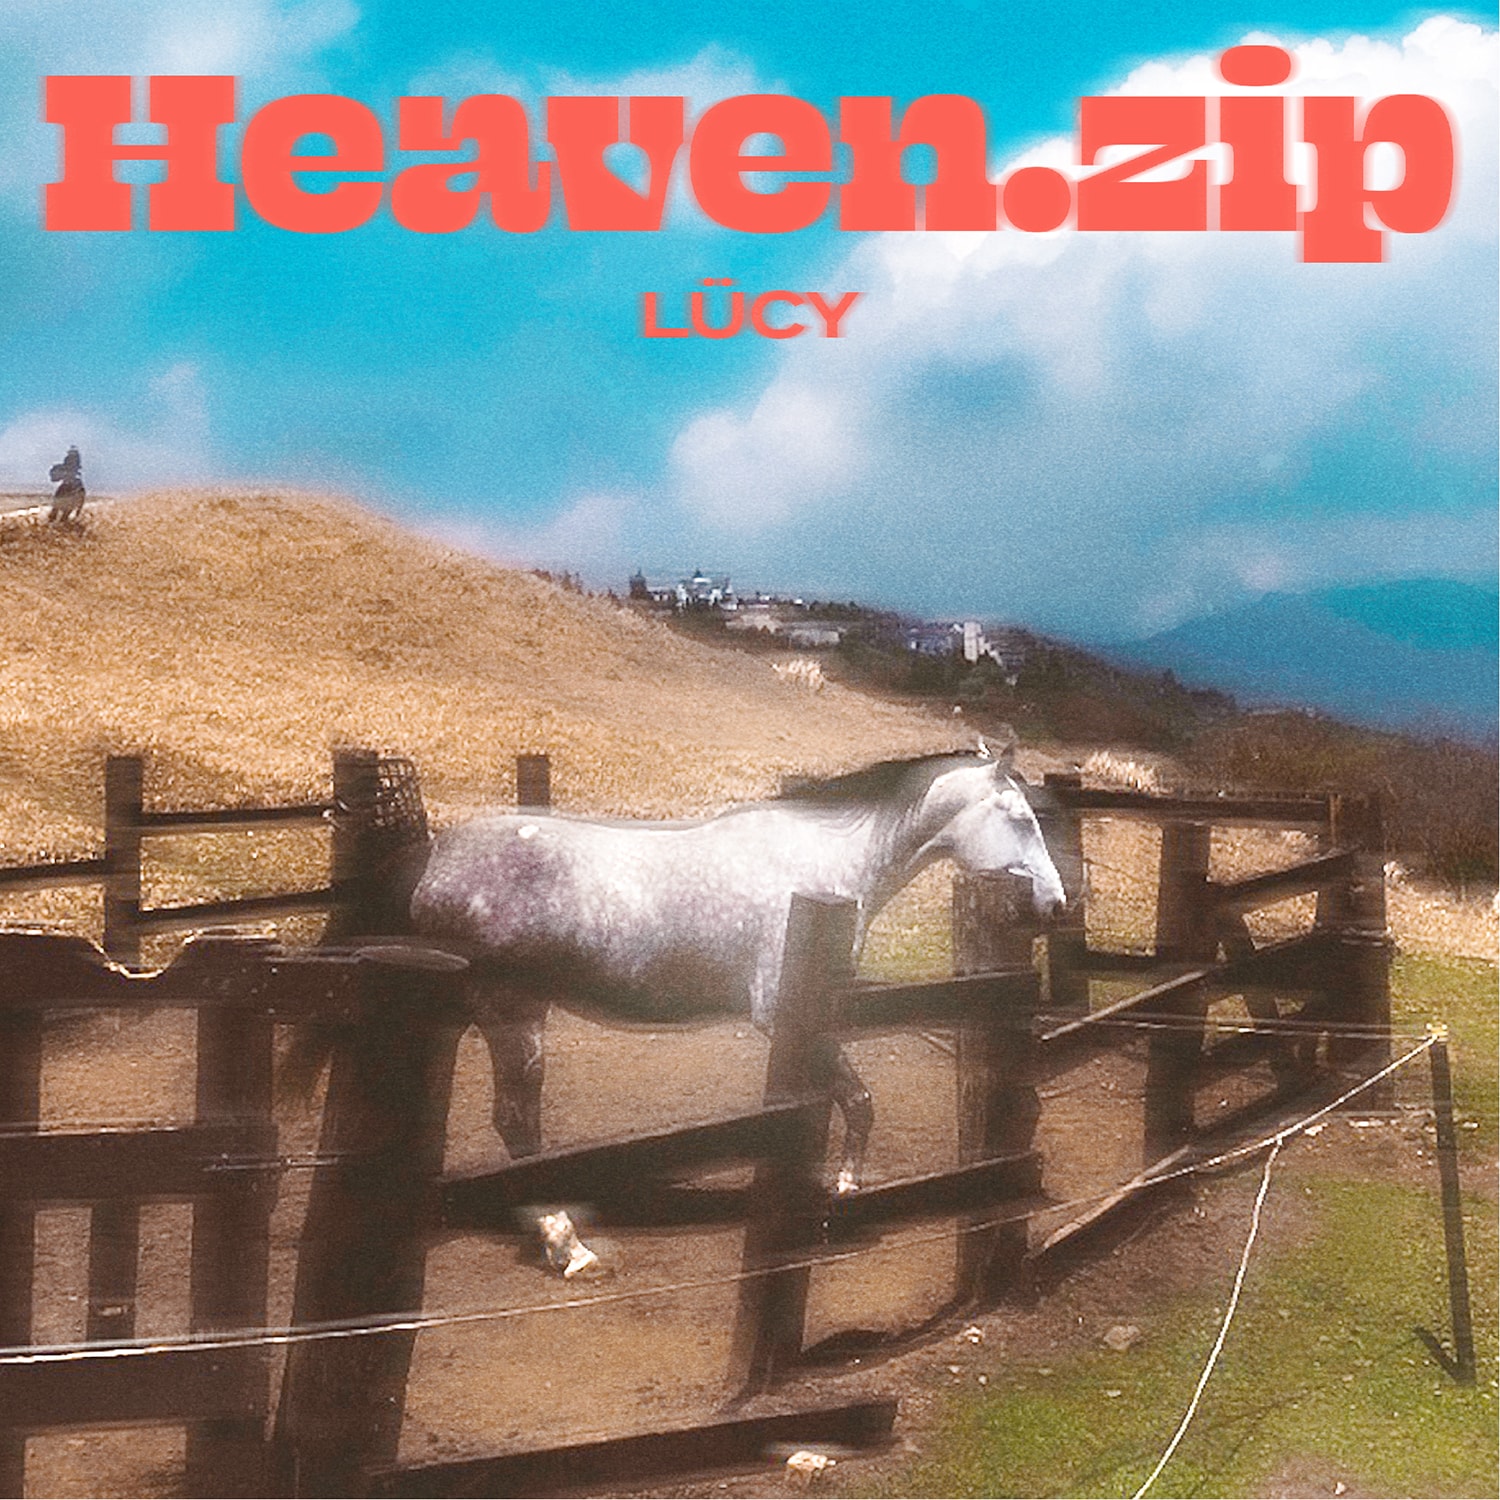 搶先試聽台灣神秘新人 LÜCY 最新單曲《Heaven.zip》